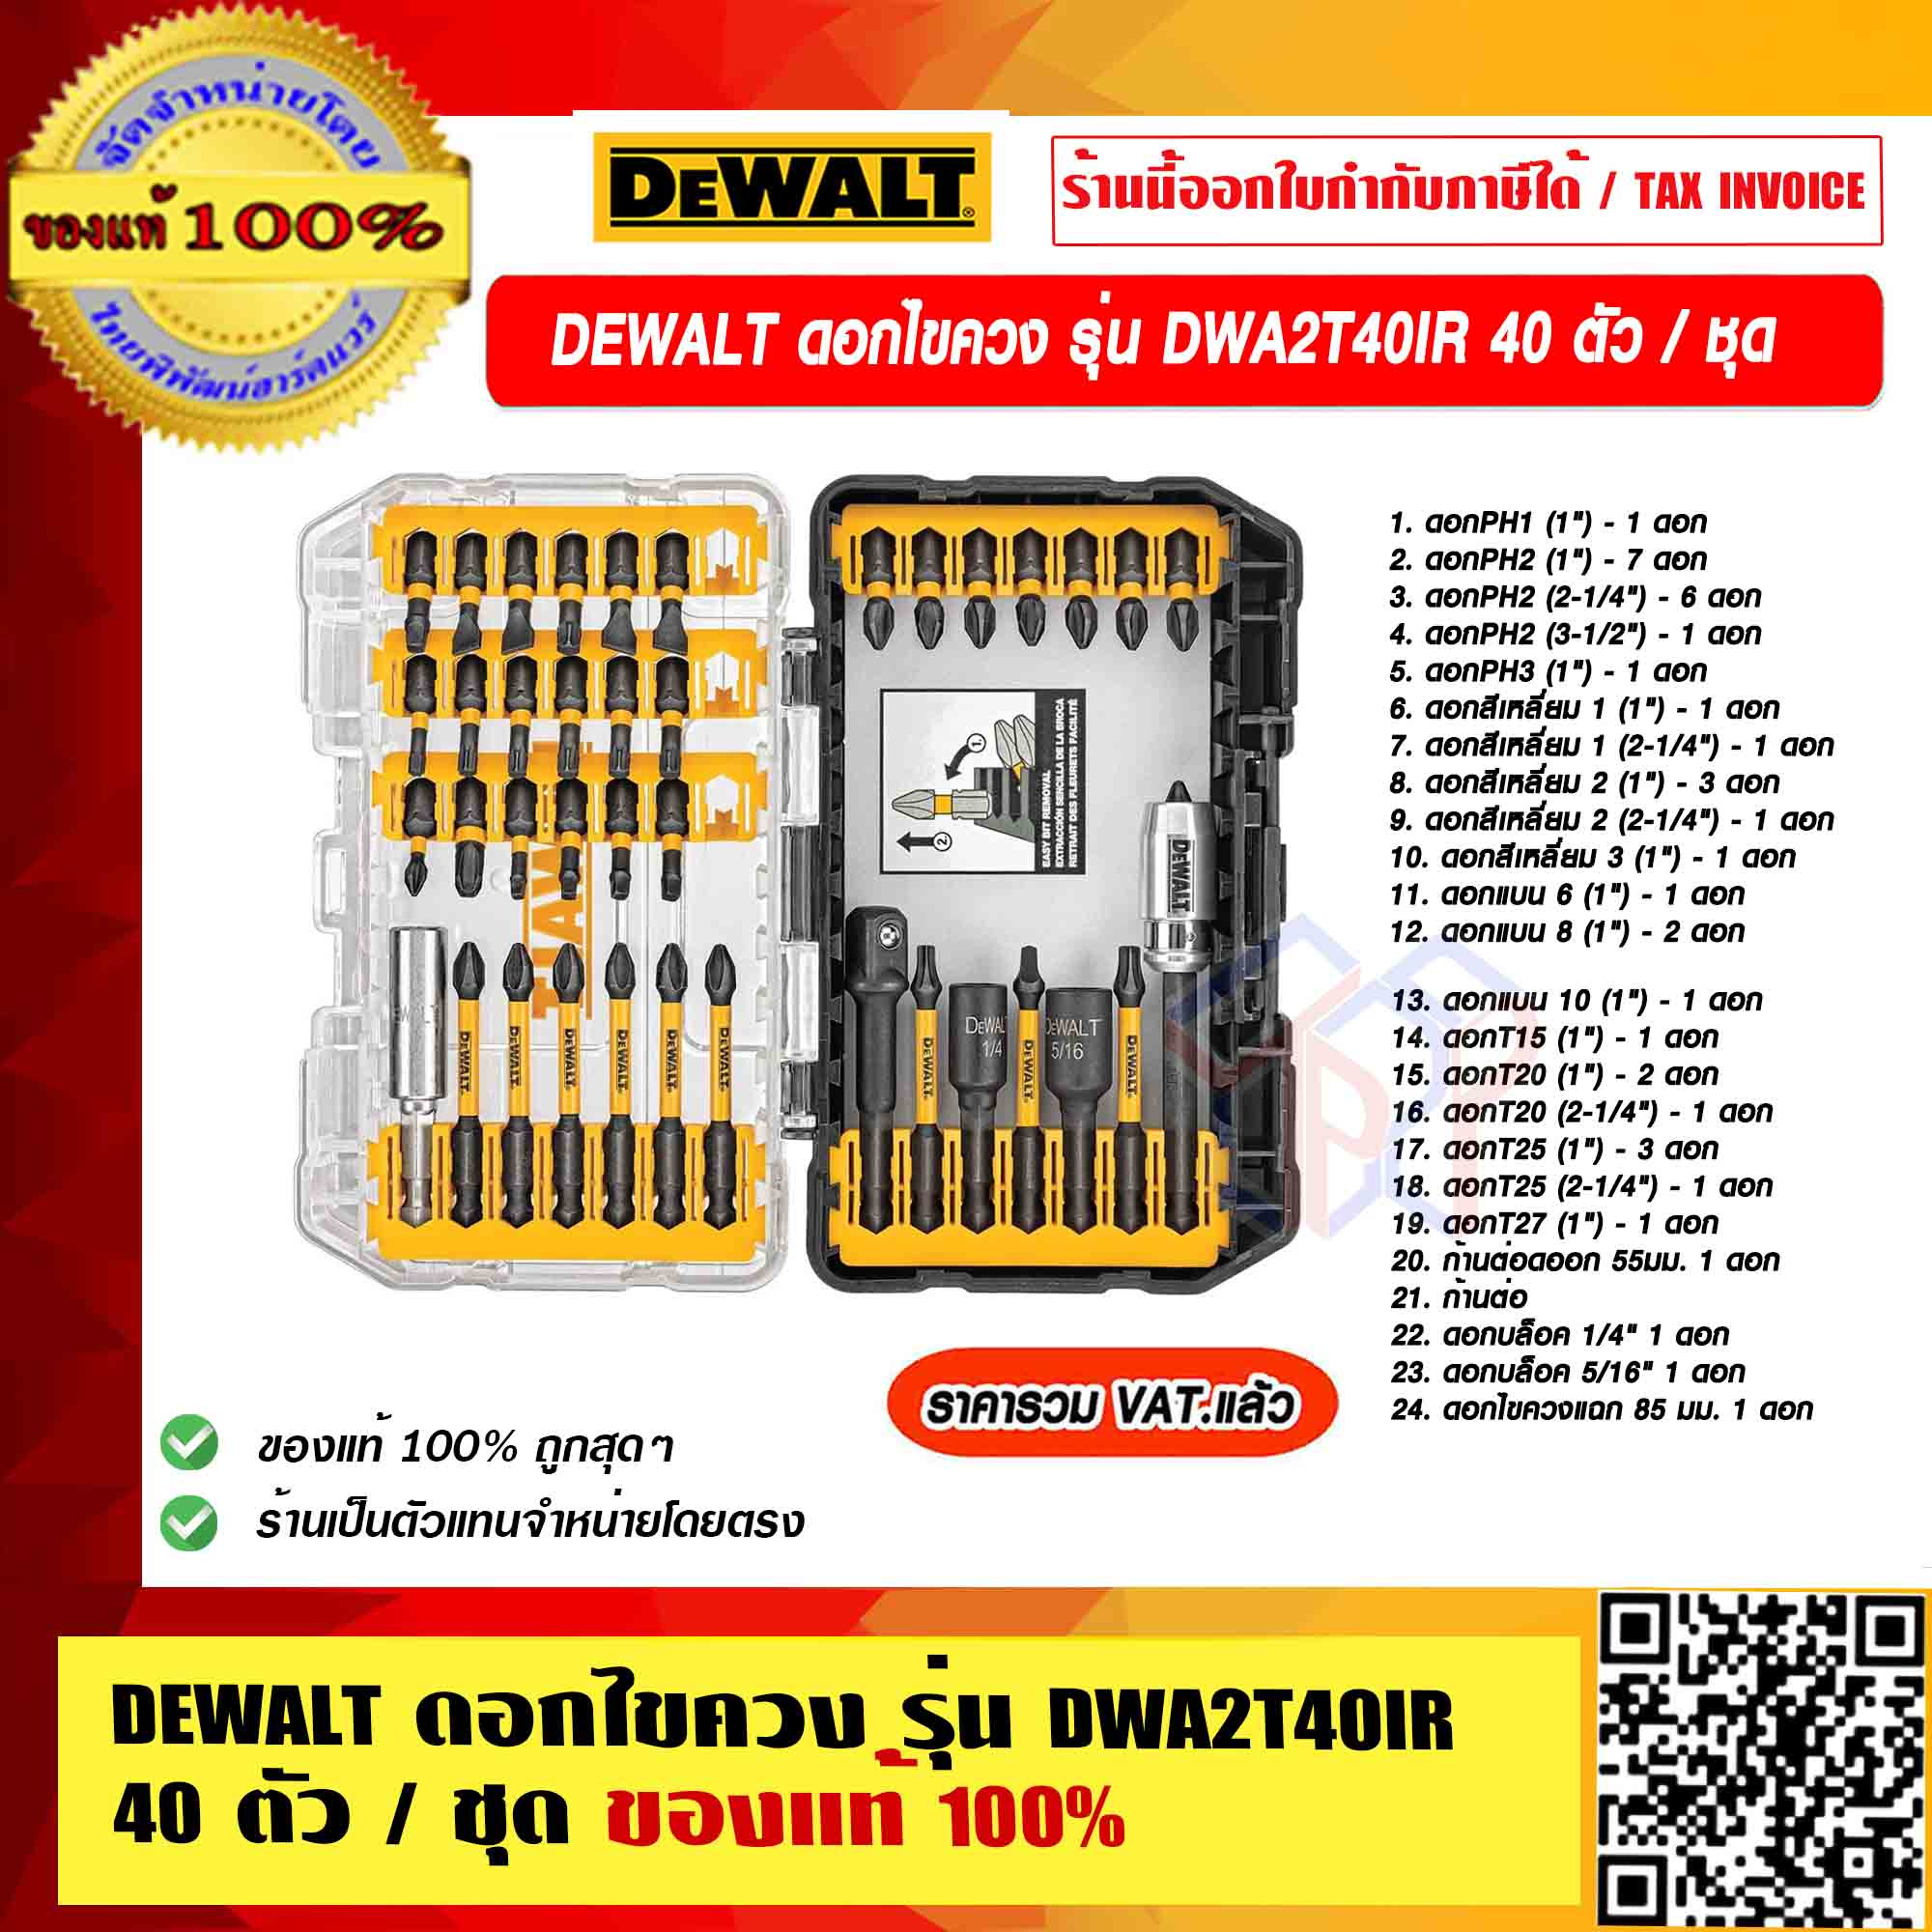 DEWALT ดอกไขควง รุ่น DWA2T40IR 40 ตัว / ชุด ของแท้ 100% ราคารวม VAT แล้ว